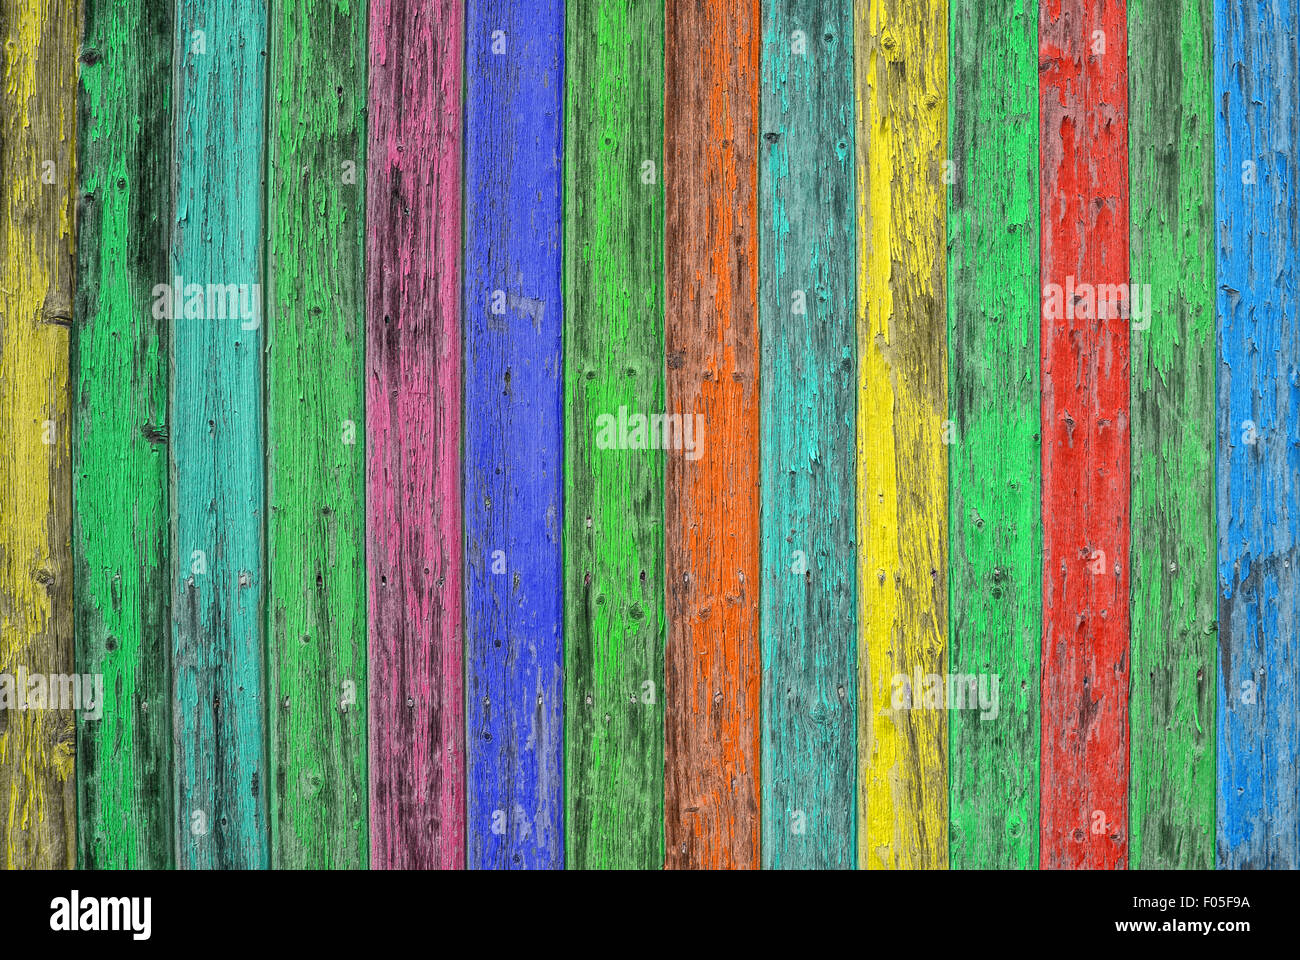 Bunte Holz-Fliesen. Farbiges Holz Hintergrund. Blau grün gelb rot schäbig schicke Tapete Textur Stockfoto